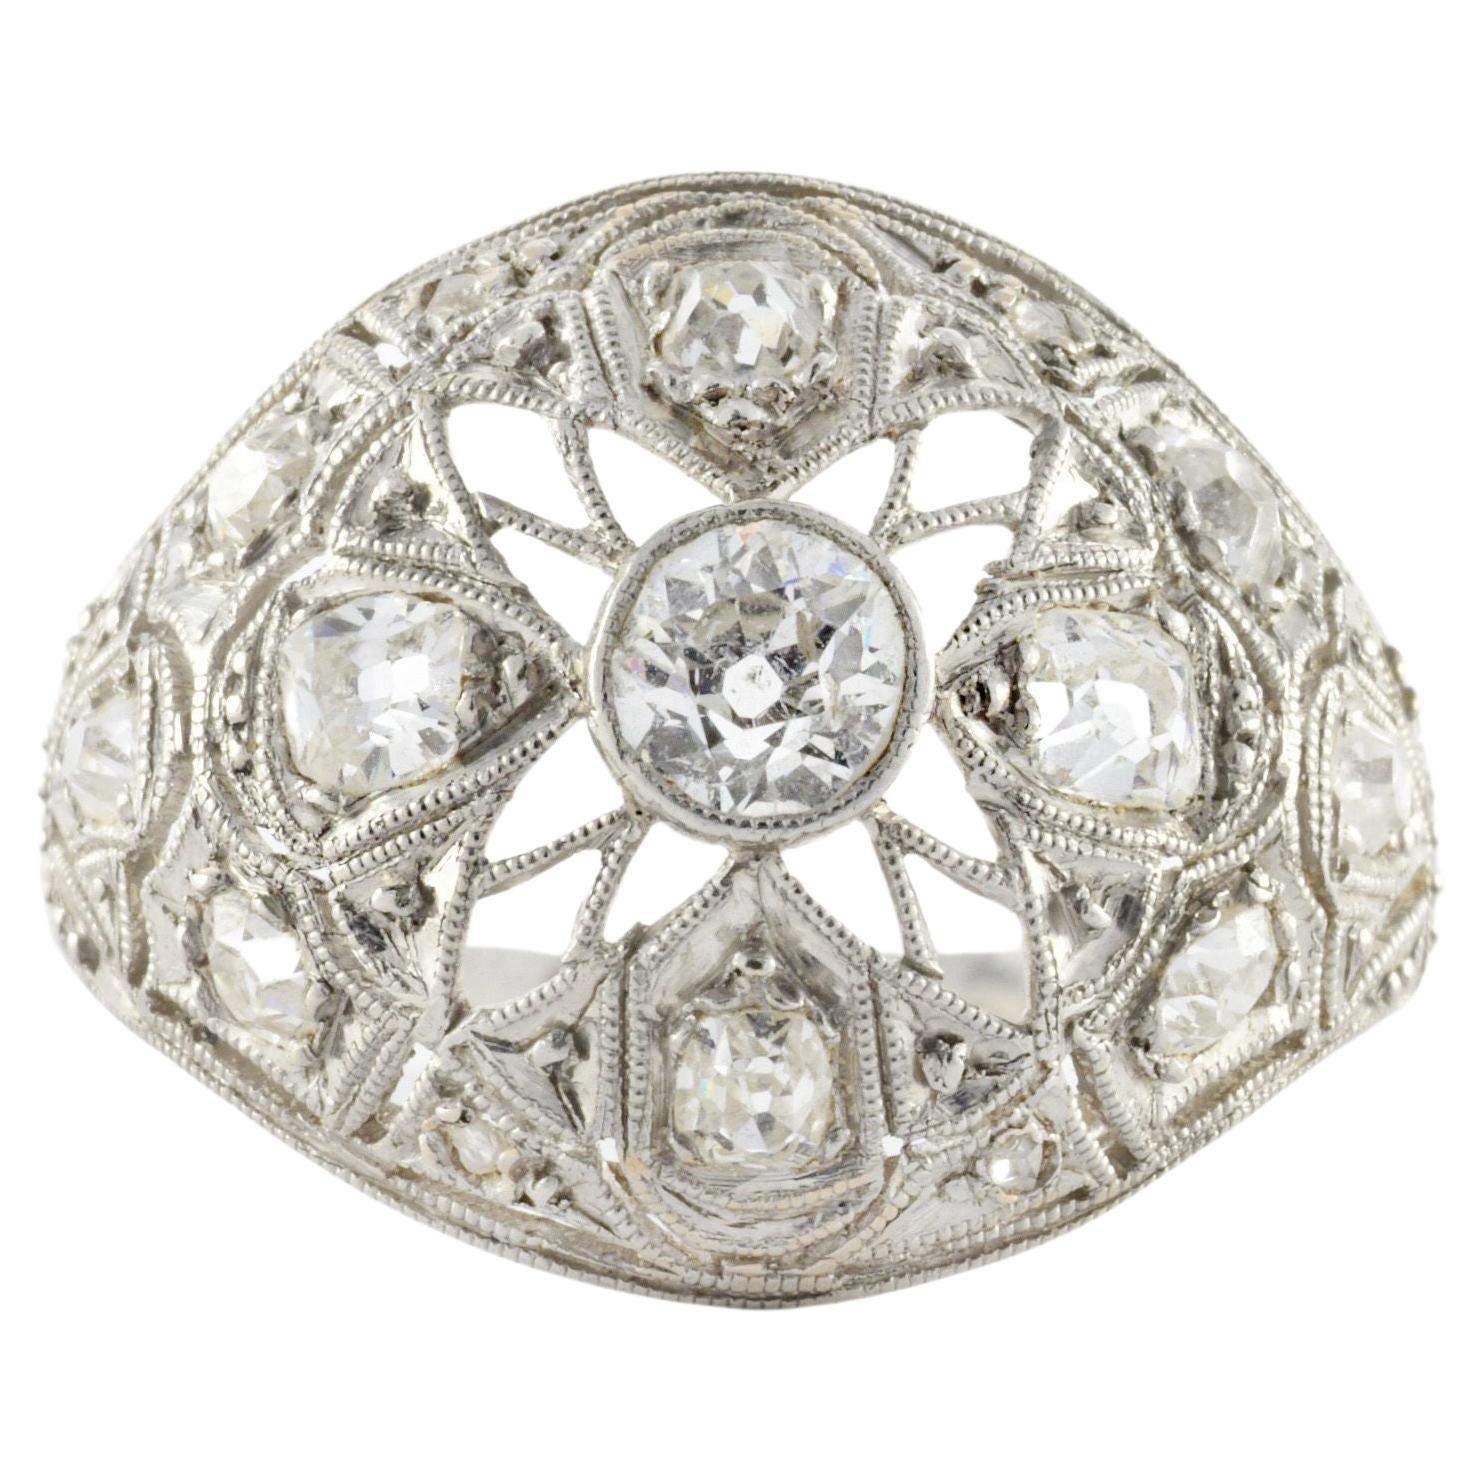 Antique Art Deco Diamond and Platinum Dome Ring